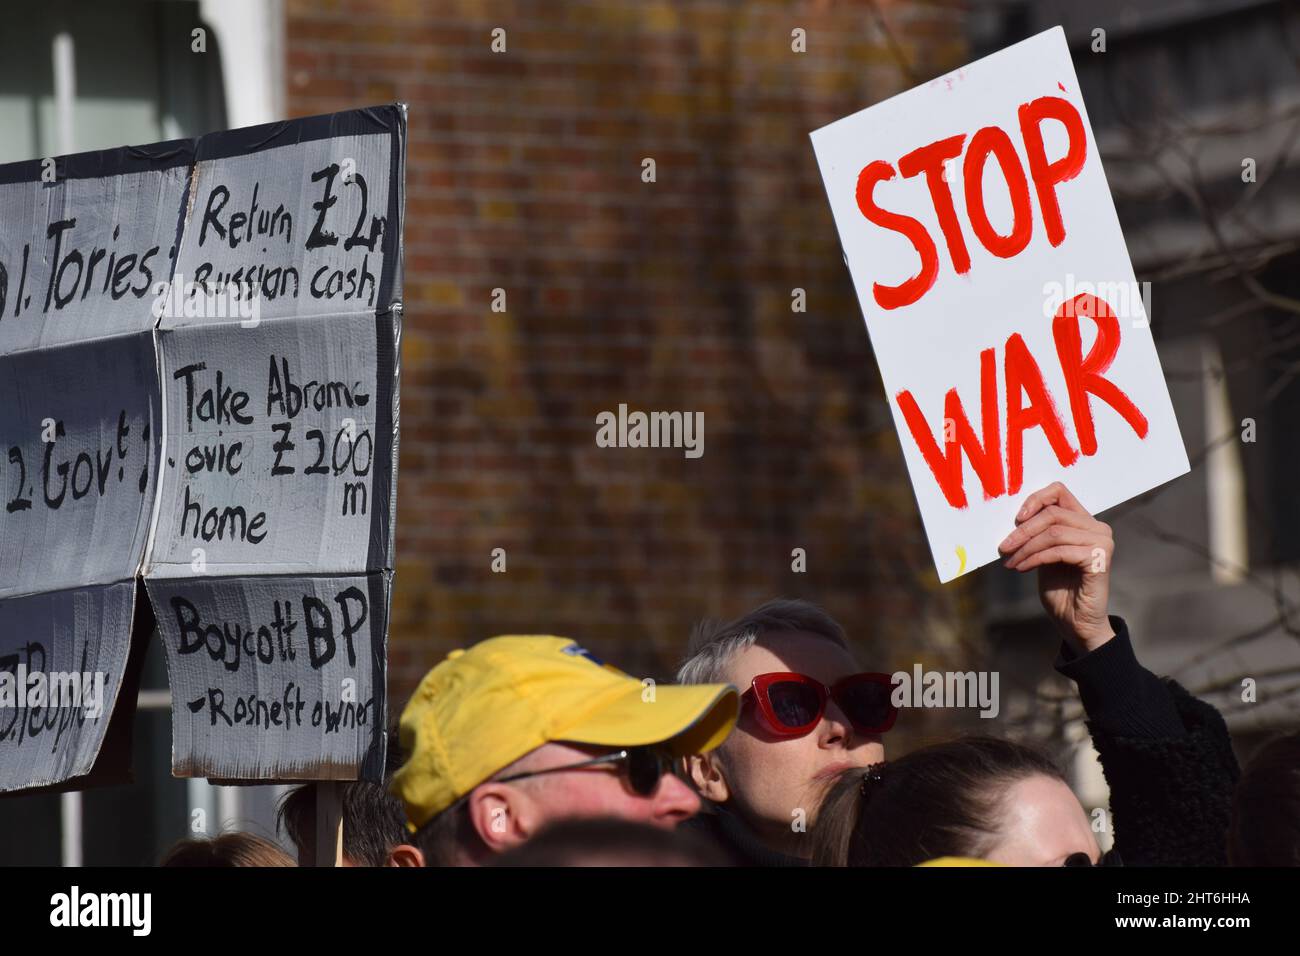 Szenen aus den Protesten gegen die russische Invasion der Ukraine in London am 26 2022. Februar, bei denen sich Tausende aus Solidarität mit der Ukraine herausstellten Stockfoto